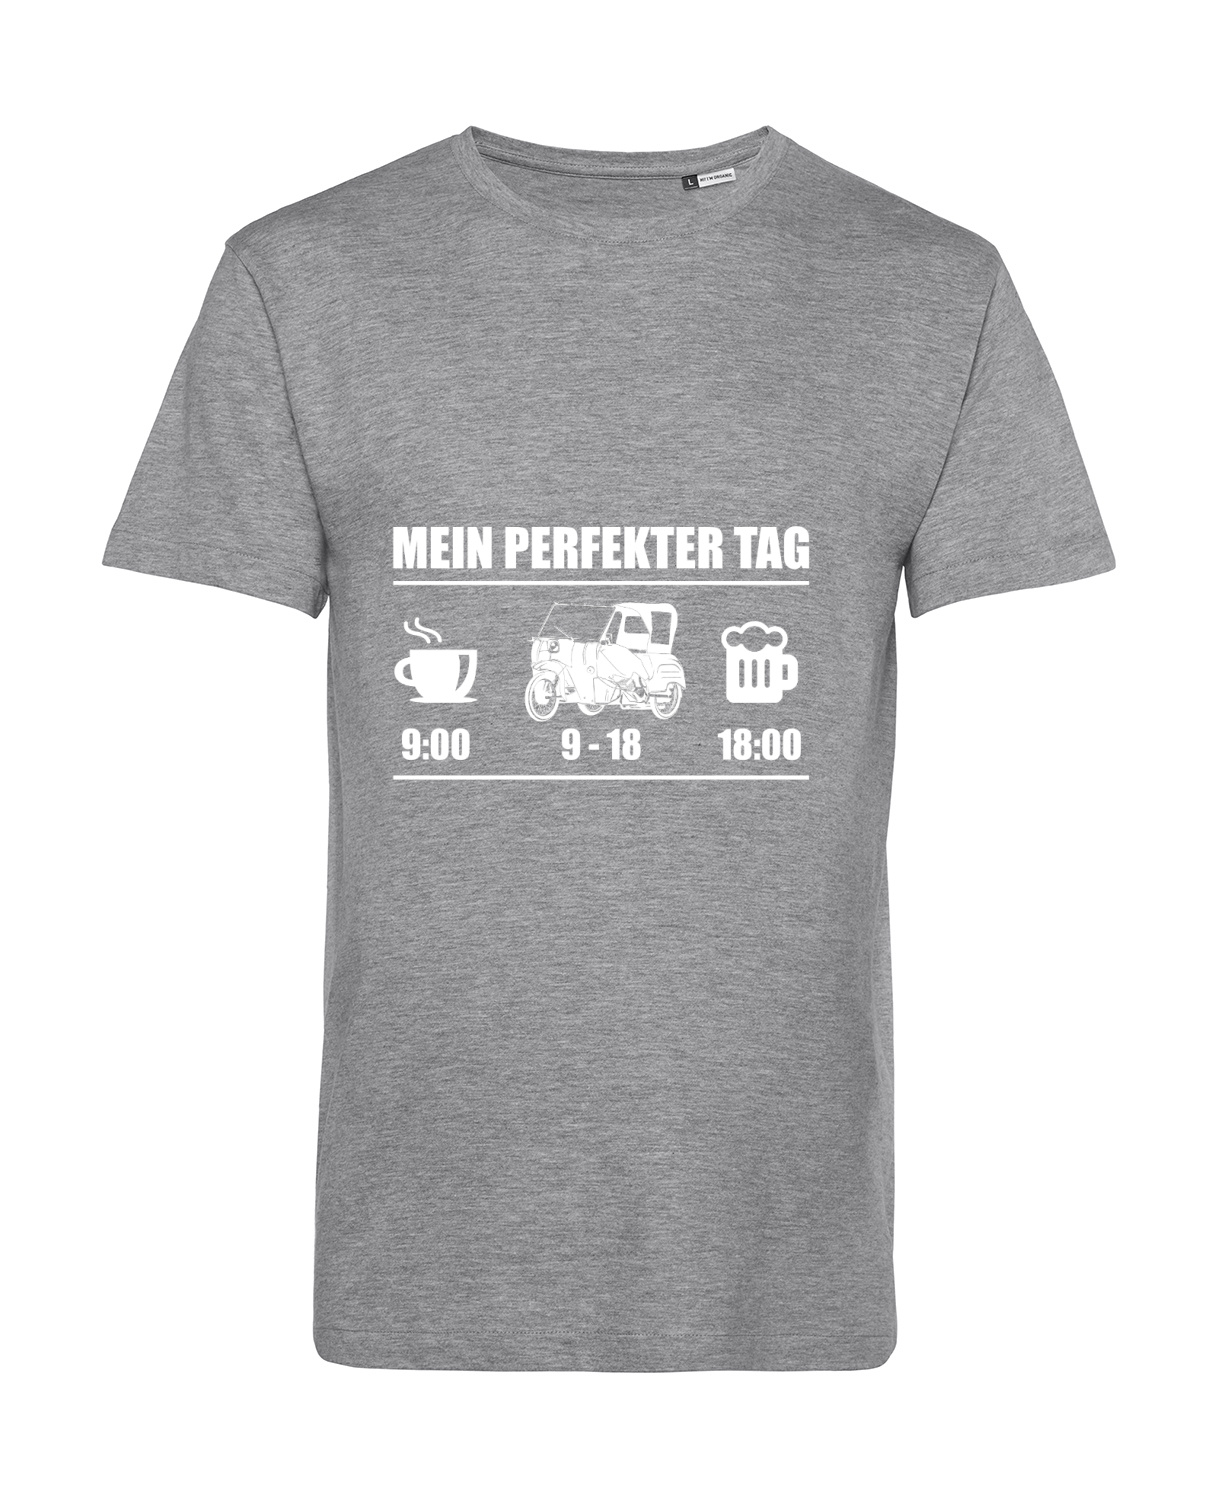 Nachhaltiges T-Shirt Herren 2Takter - Mein perfekter Tag DUO